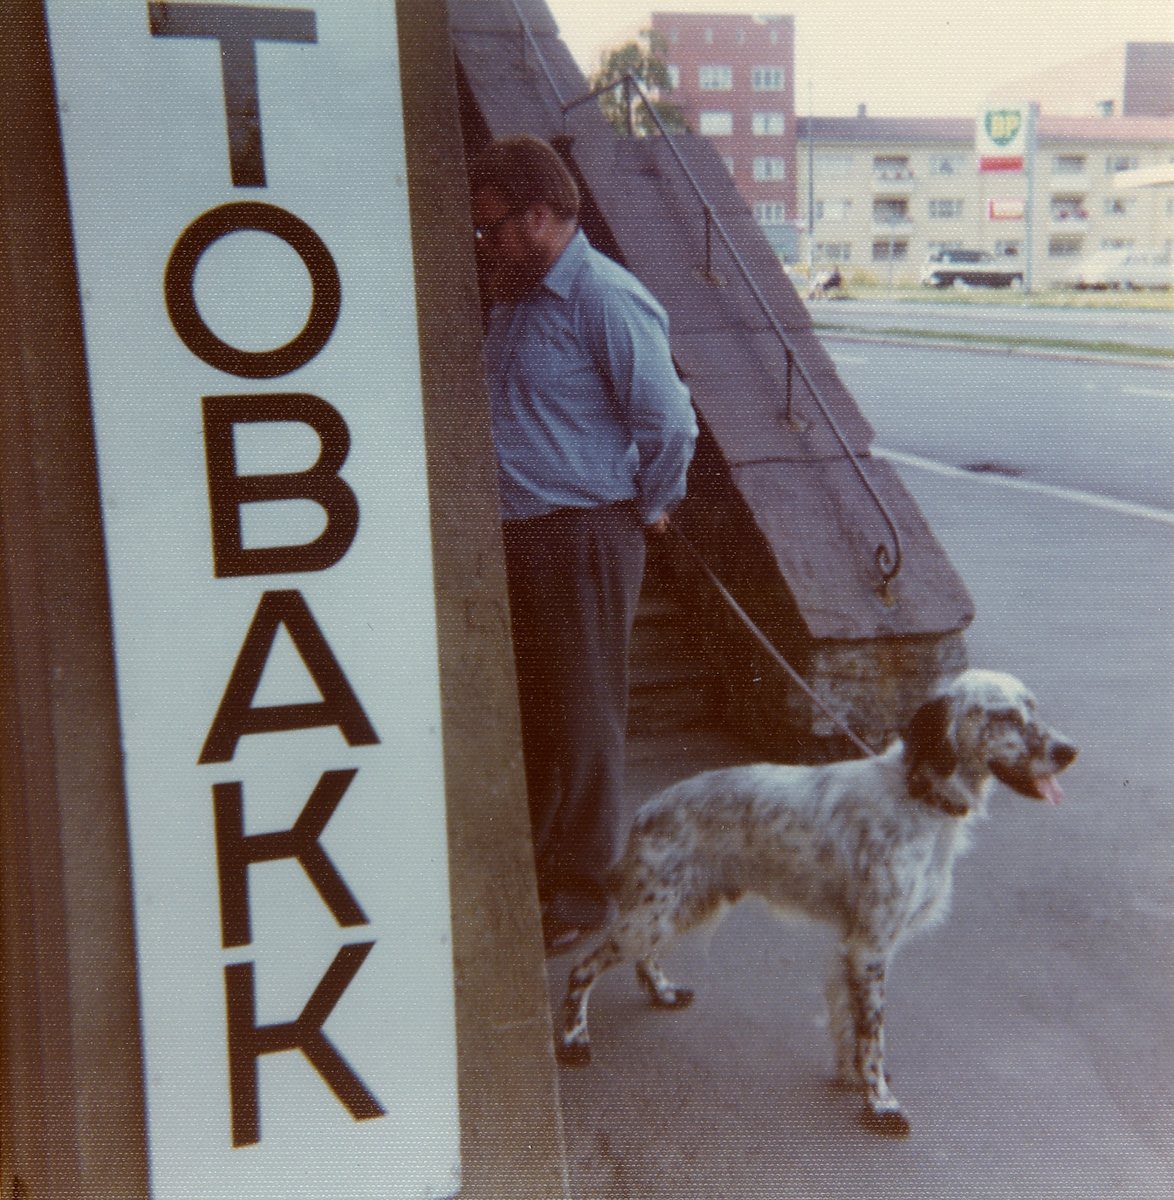 Mann med hund ved tobakk-skilt.